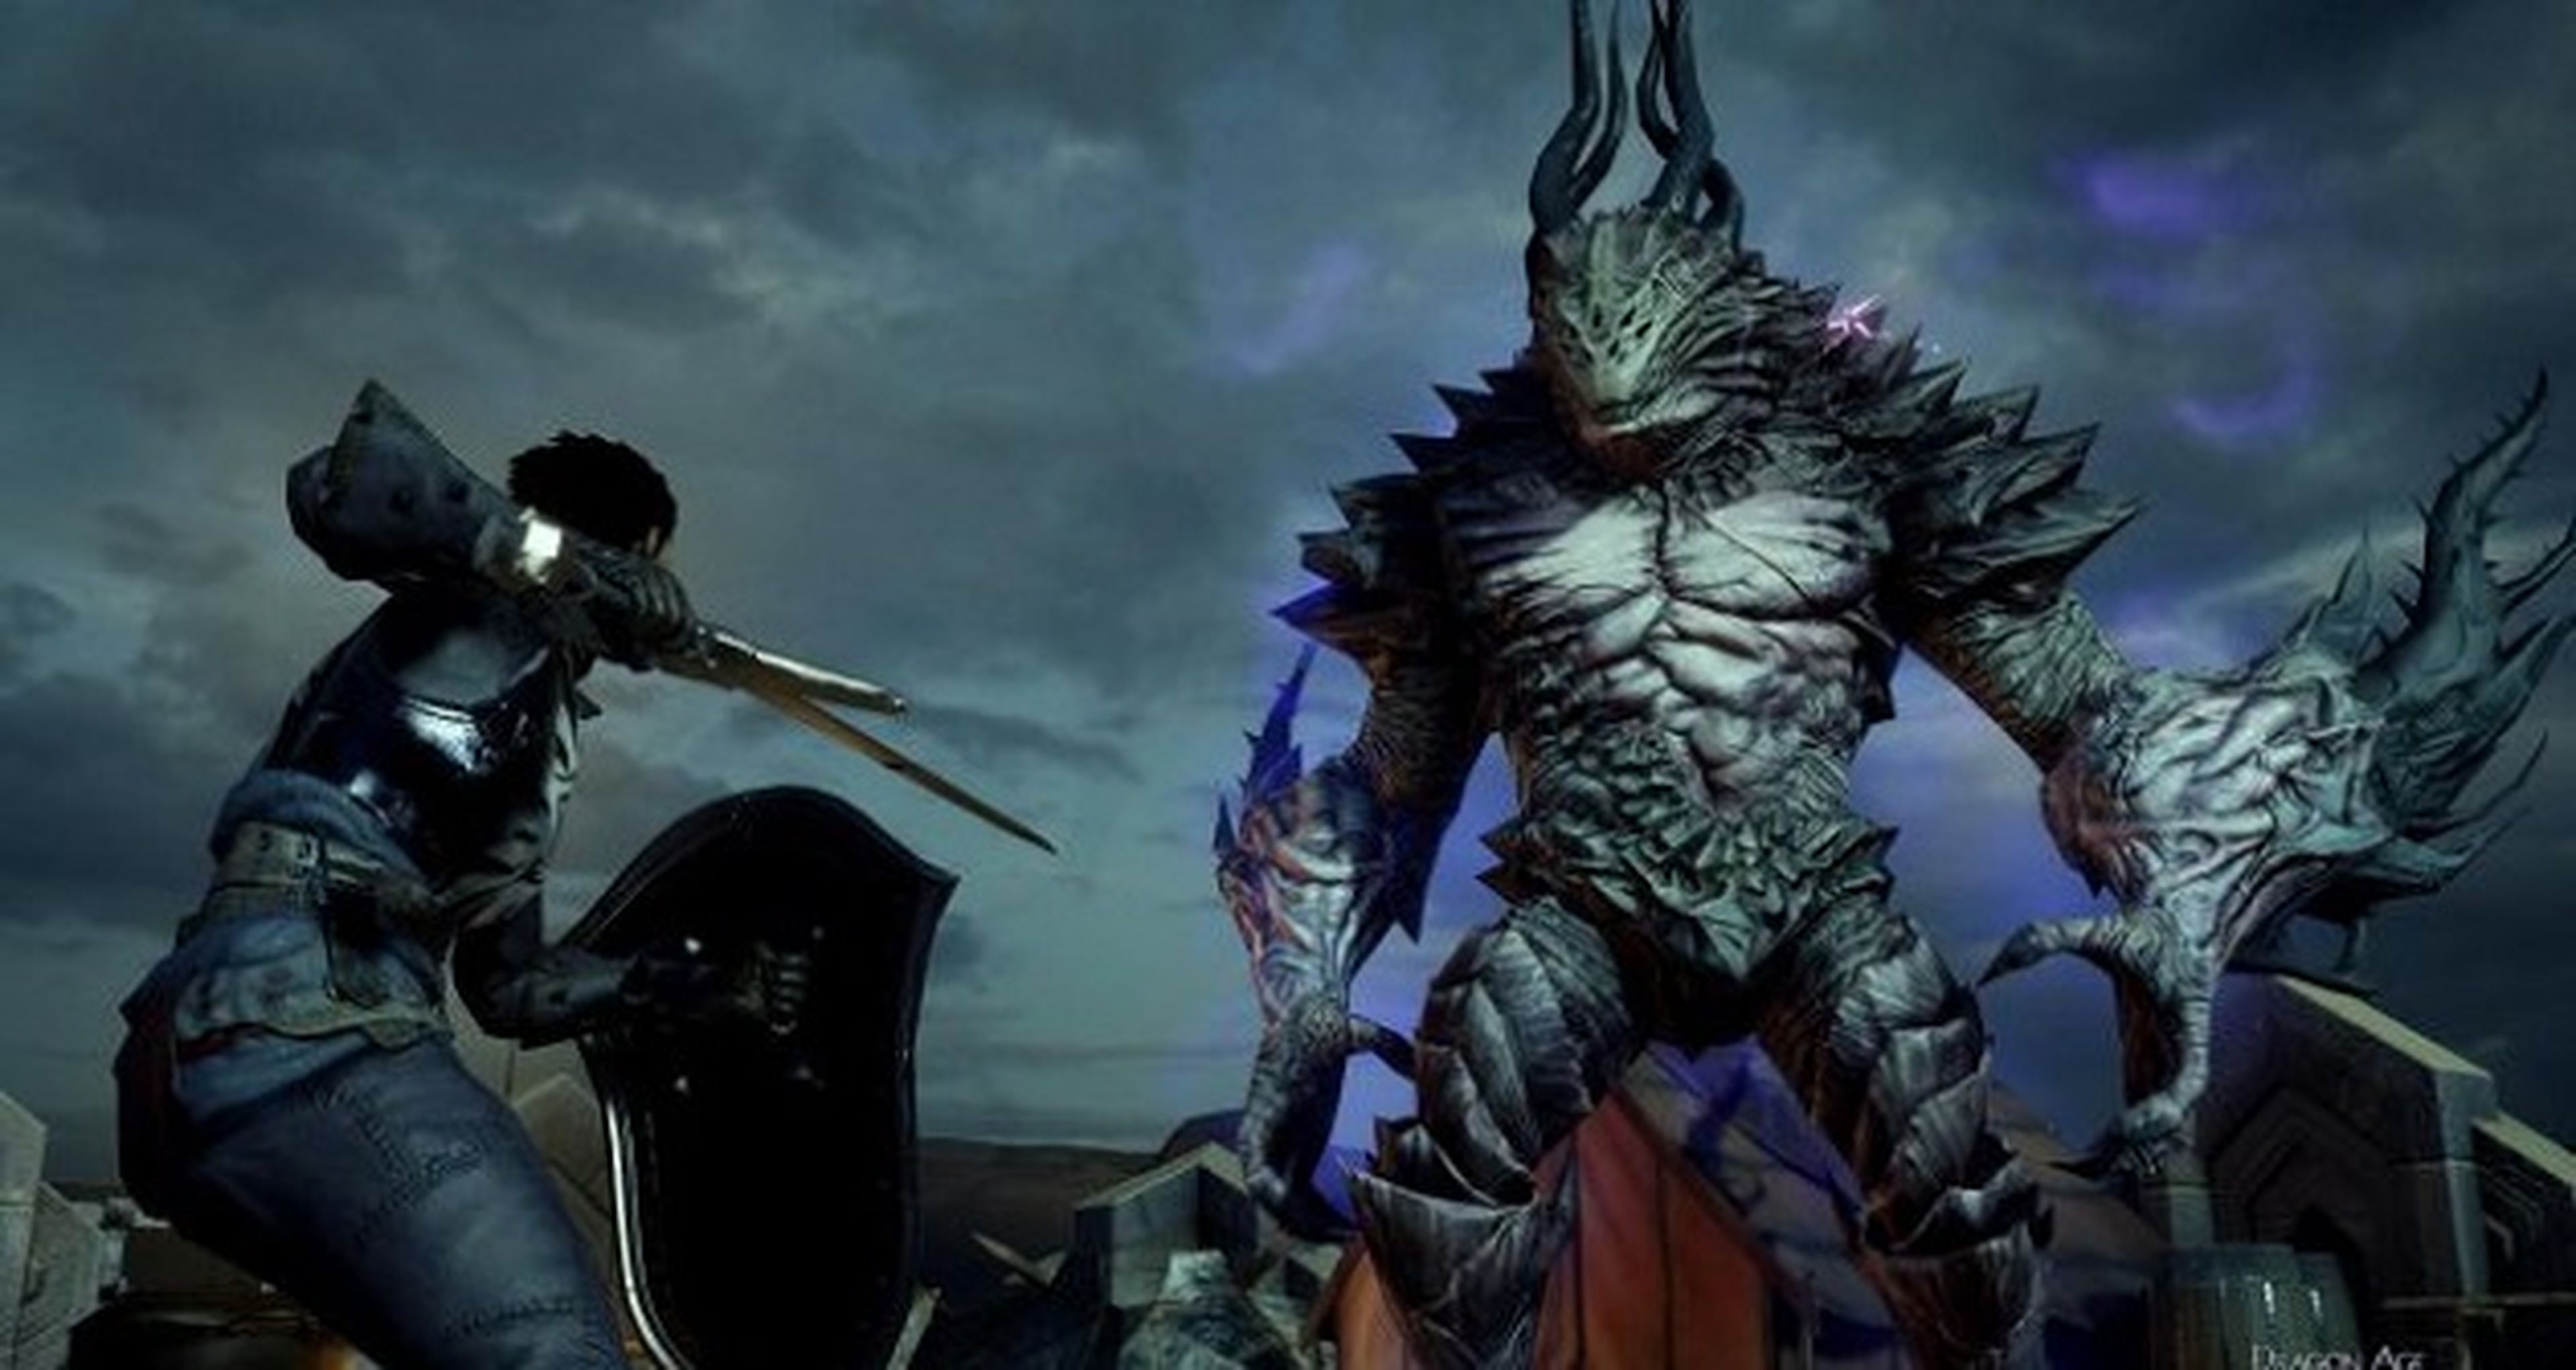 Dragon Age tendrá una nueva entrega, pero no en 2015